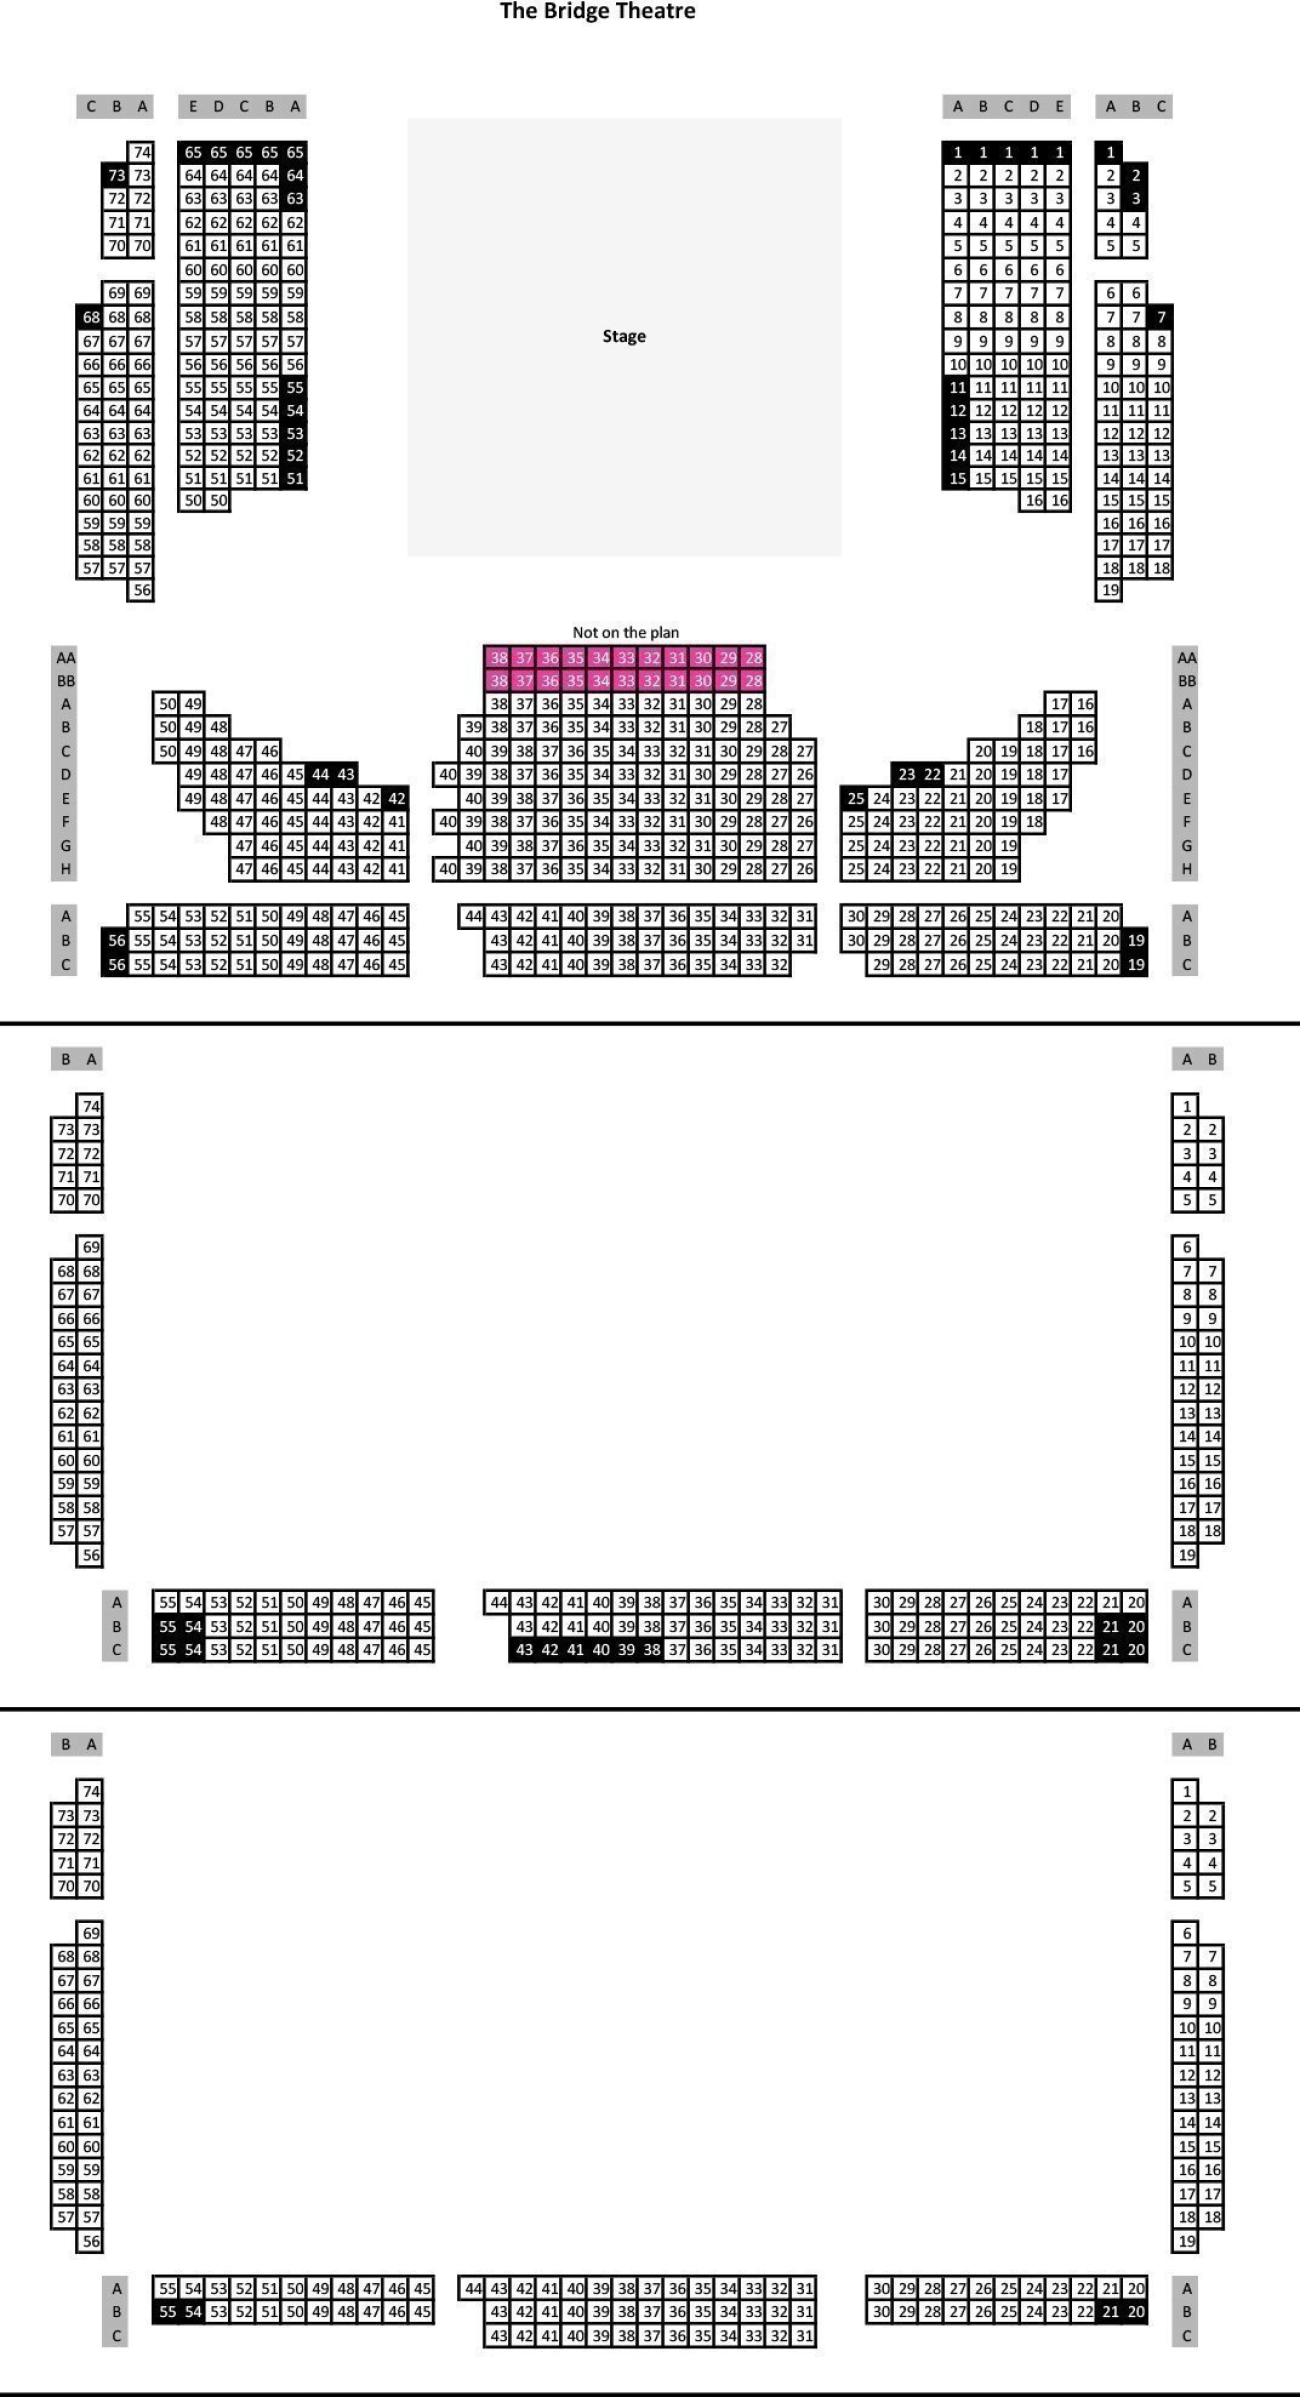 Plano de asientos de The Bridge Theatre